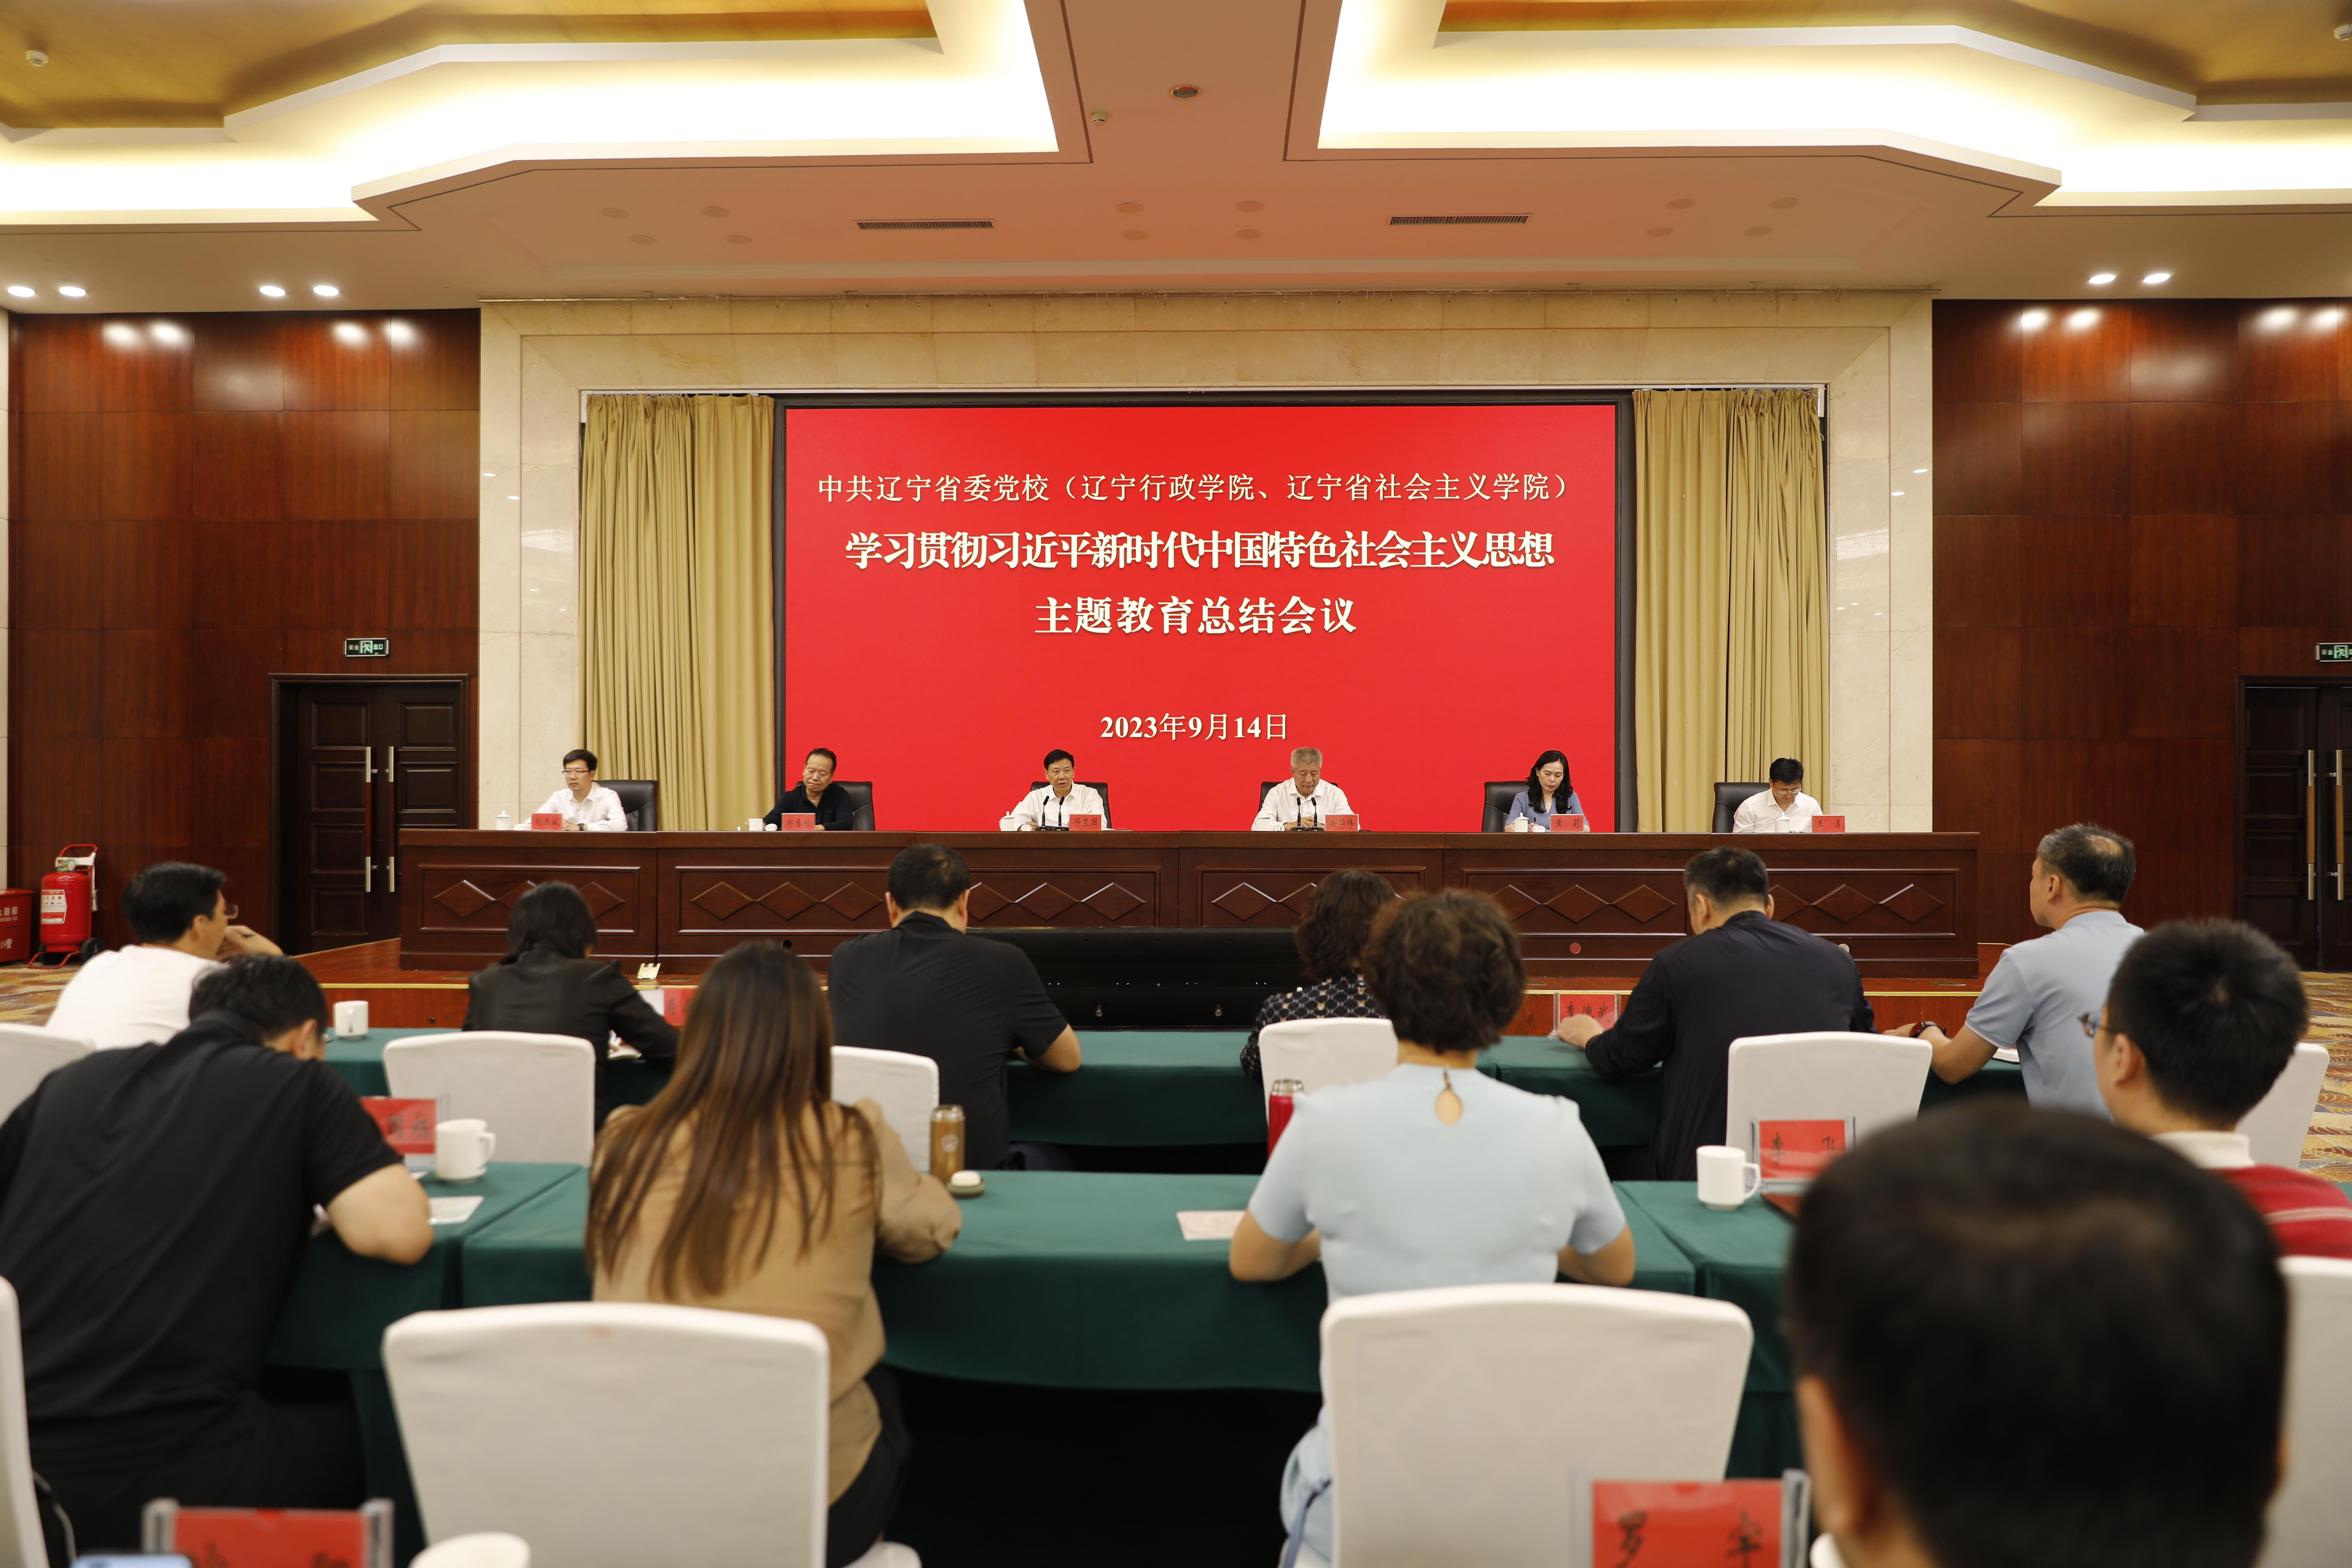 校（院）召开学习贯彻习近平新时代中国特色社会主义思想主题教育总结会议